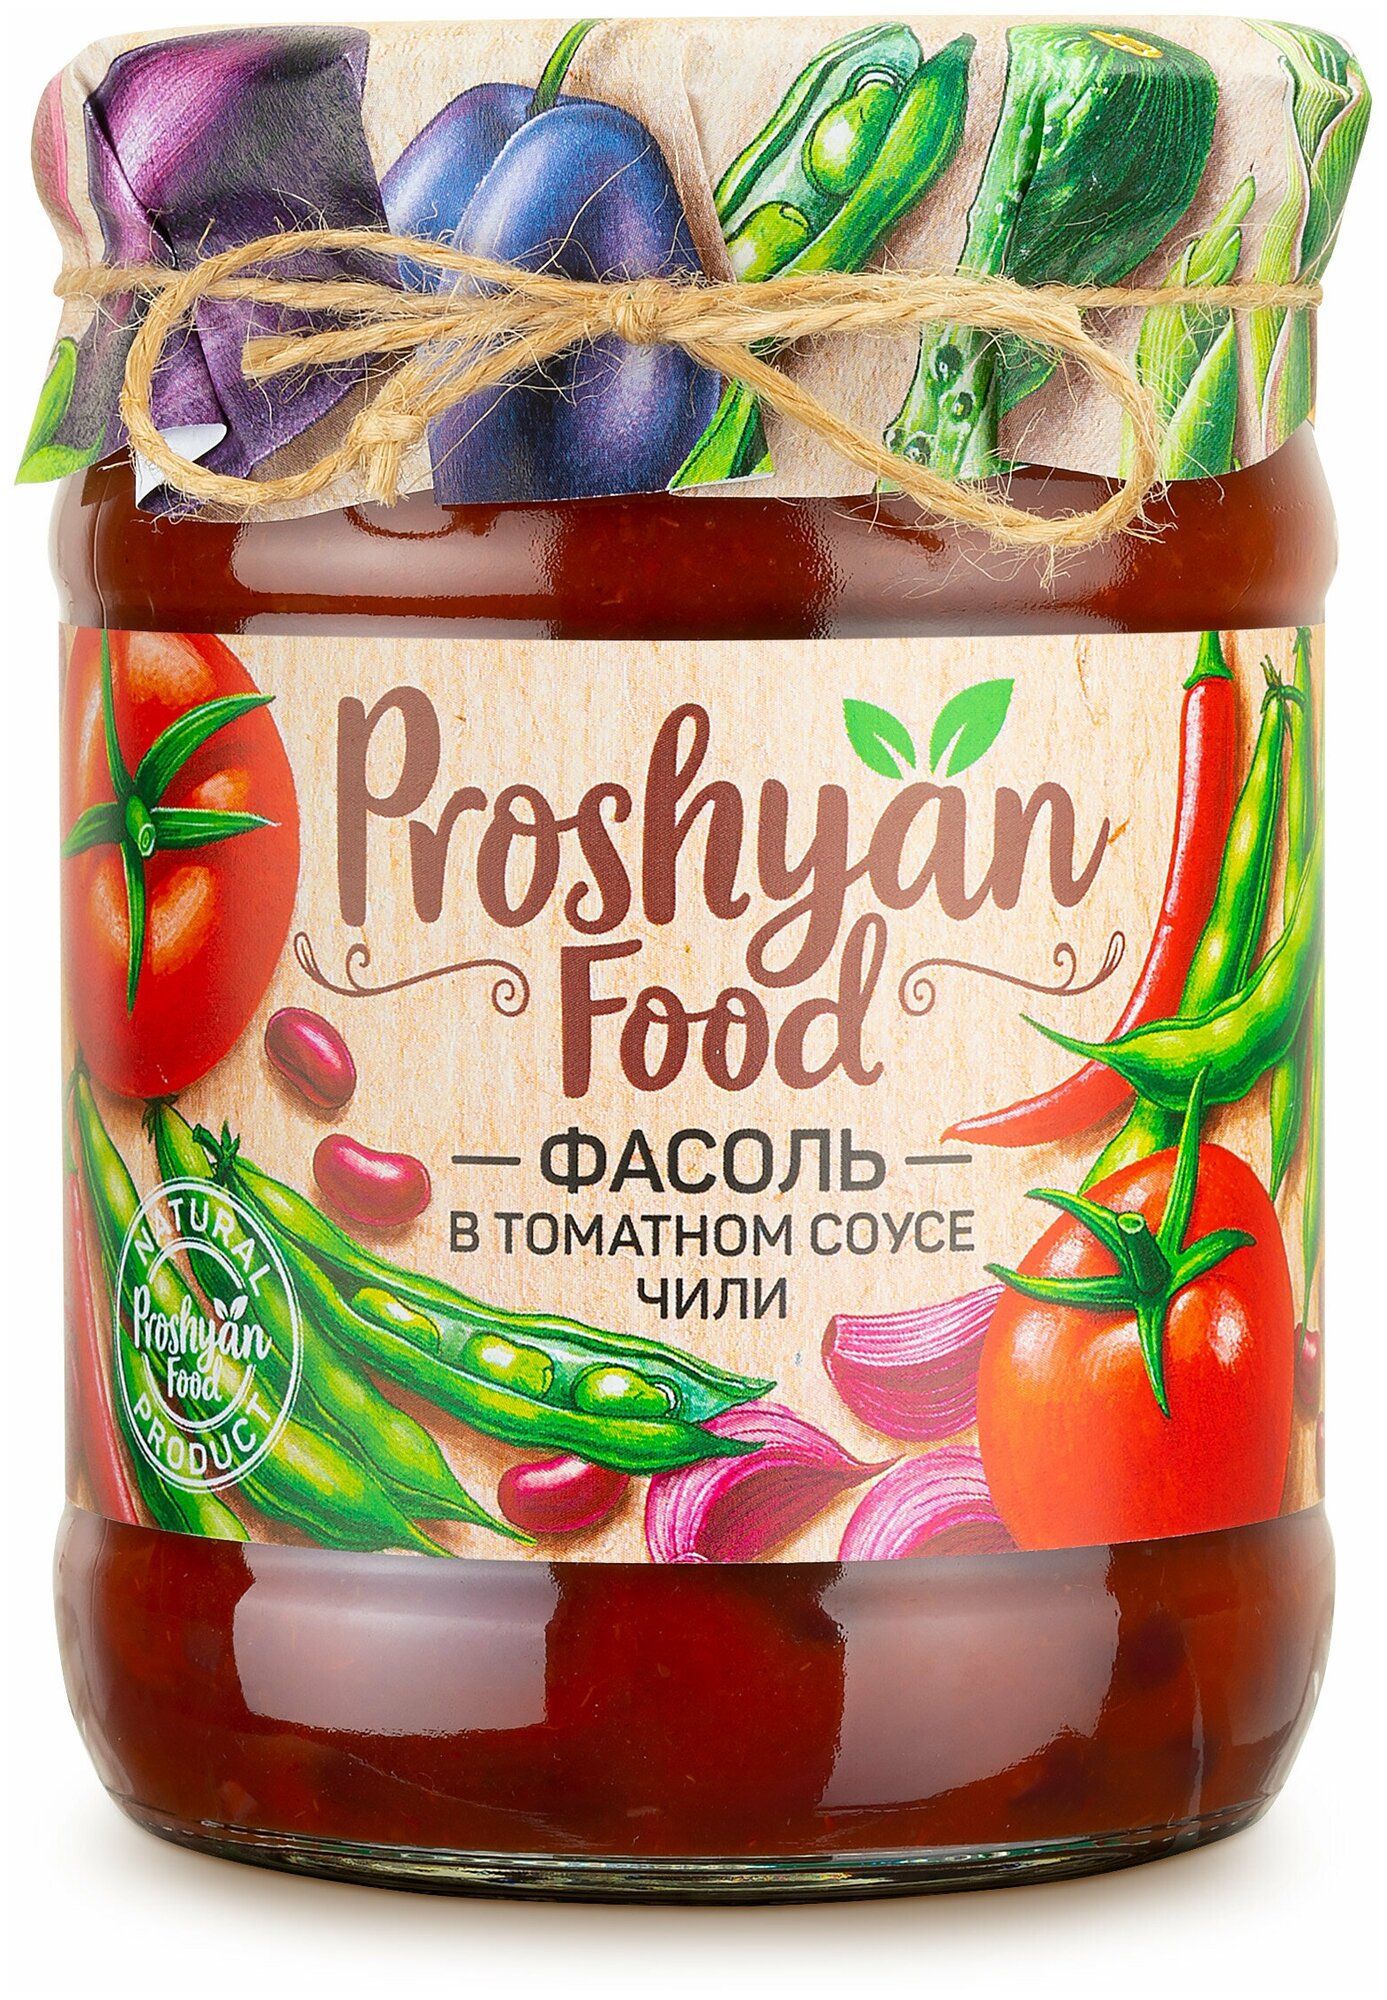 Фасоль в томатном соусе чили PROSHYAN FOOD стеклянная банка 500г